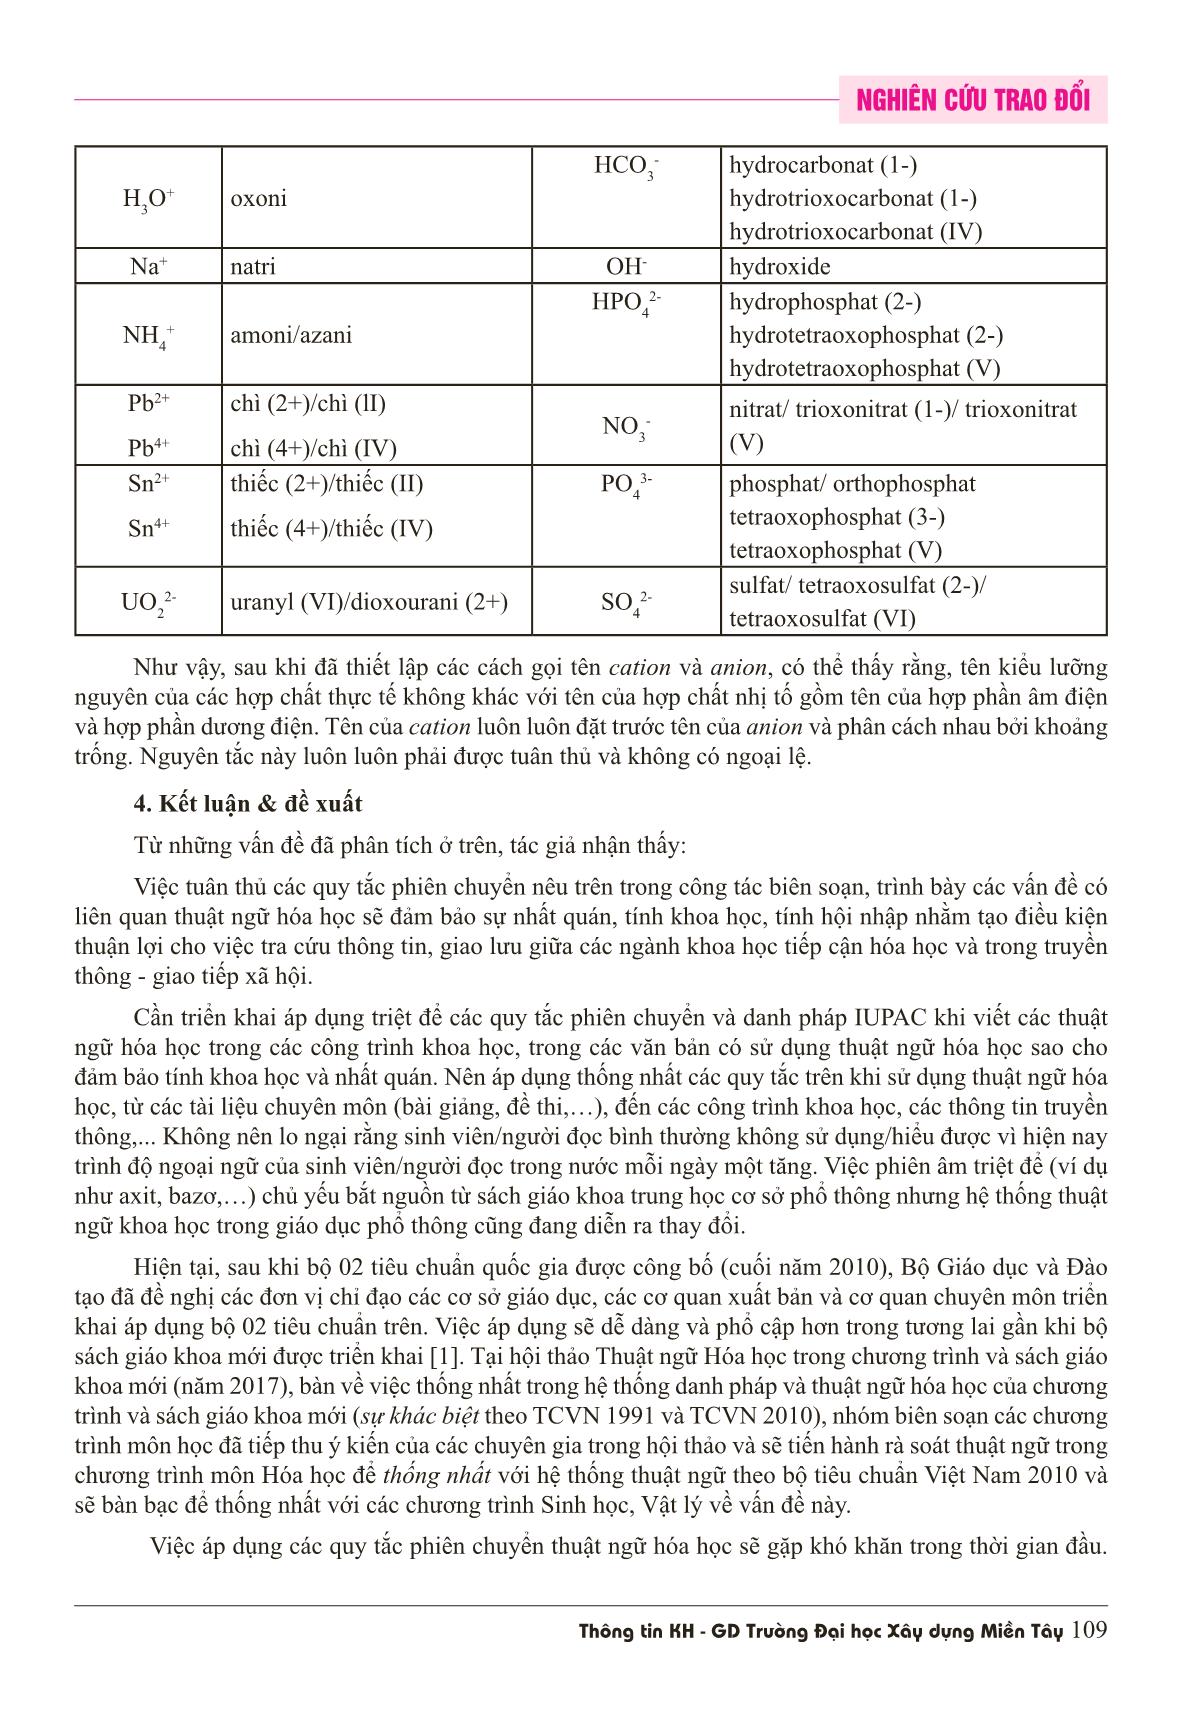 Áp dụng các quy tắc phiên chuyển và danh pháp iupac vào danh pháp hóa học Việt Nam trang 7